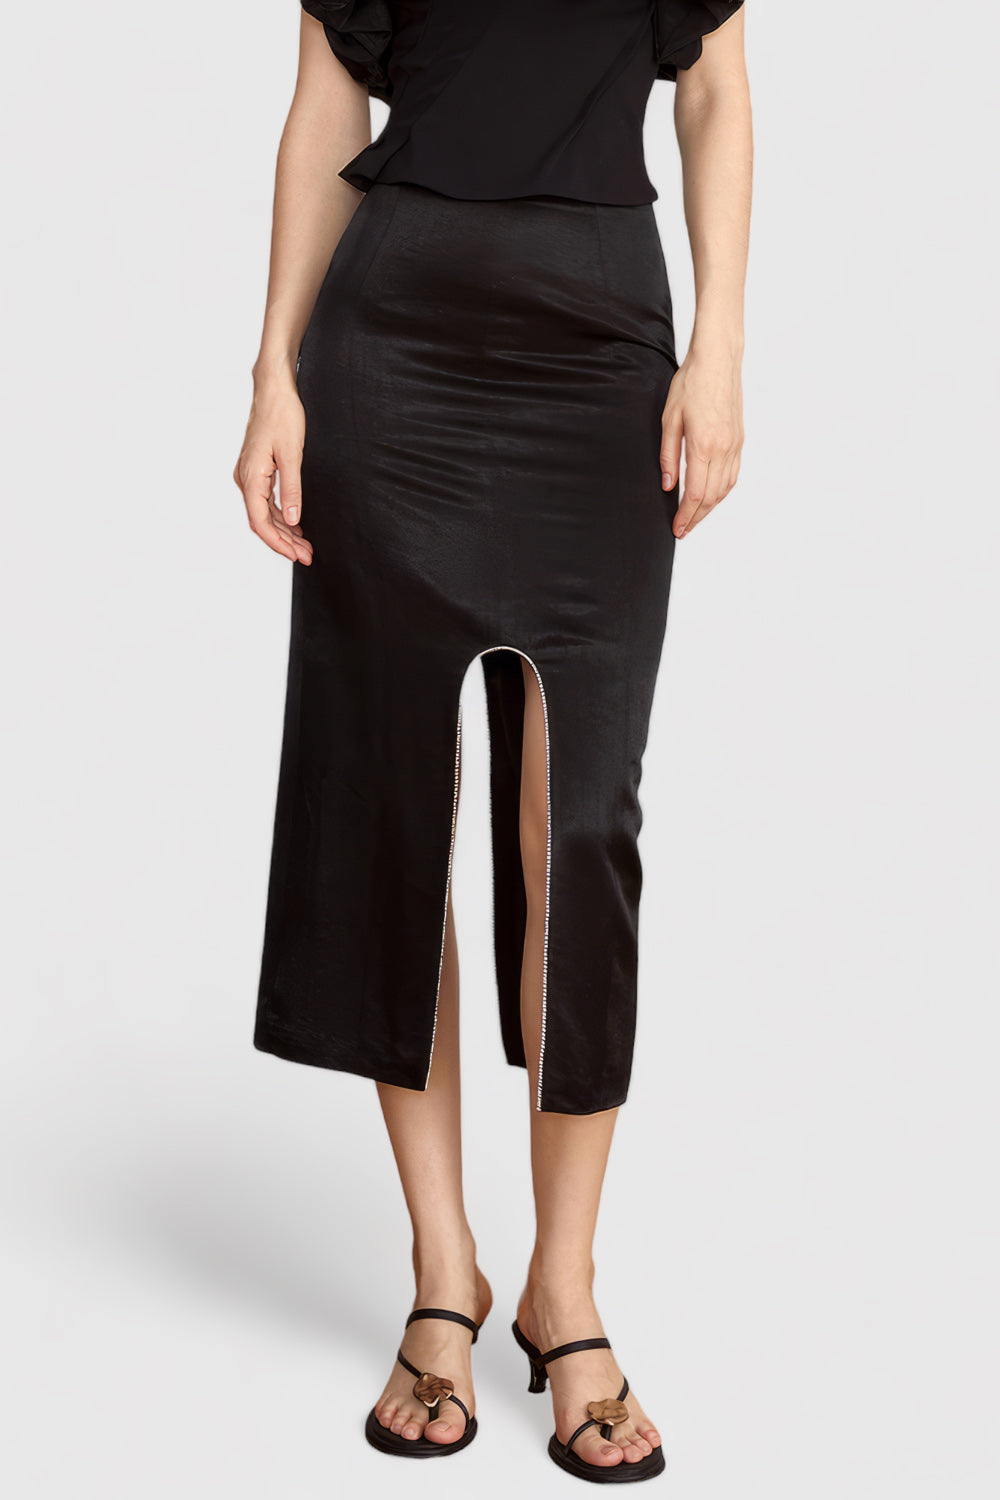 Midi Skirt with Rounded Slit - Black